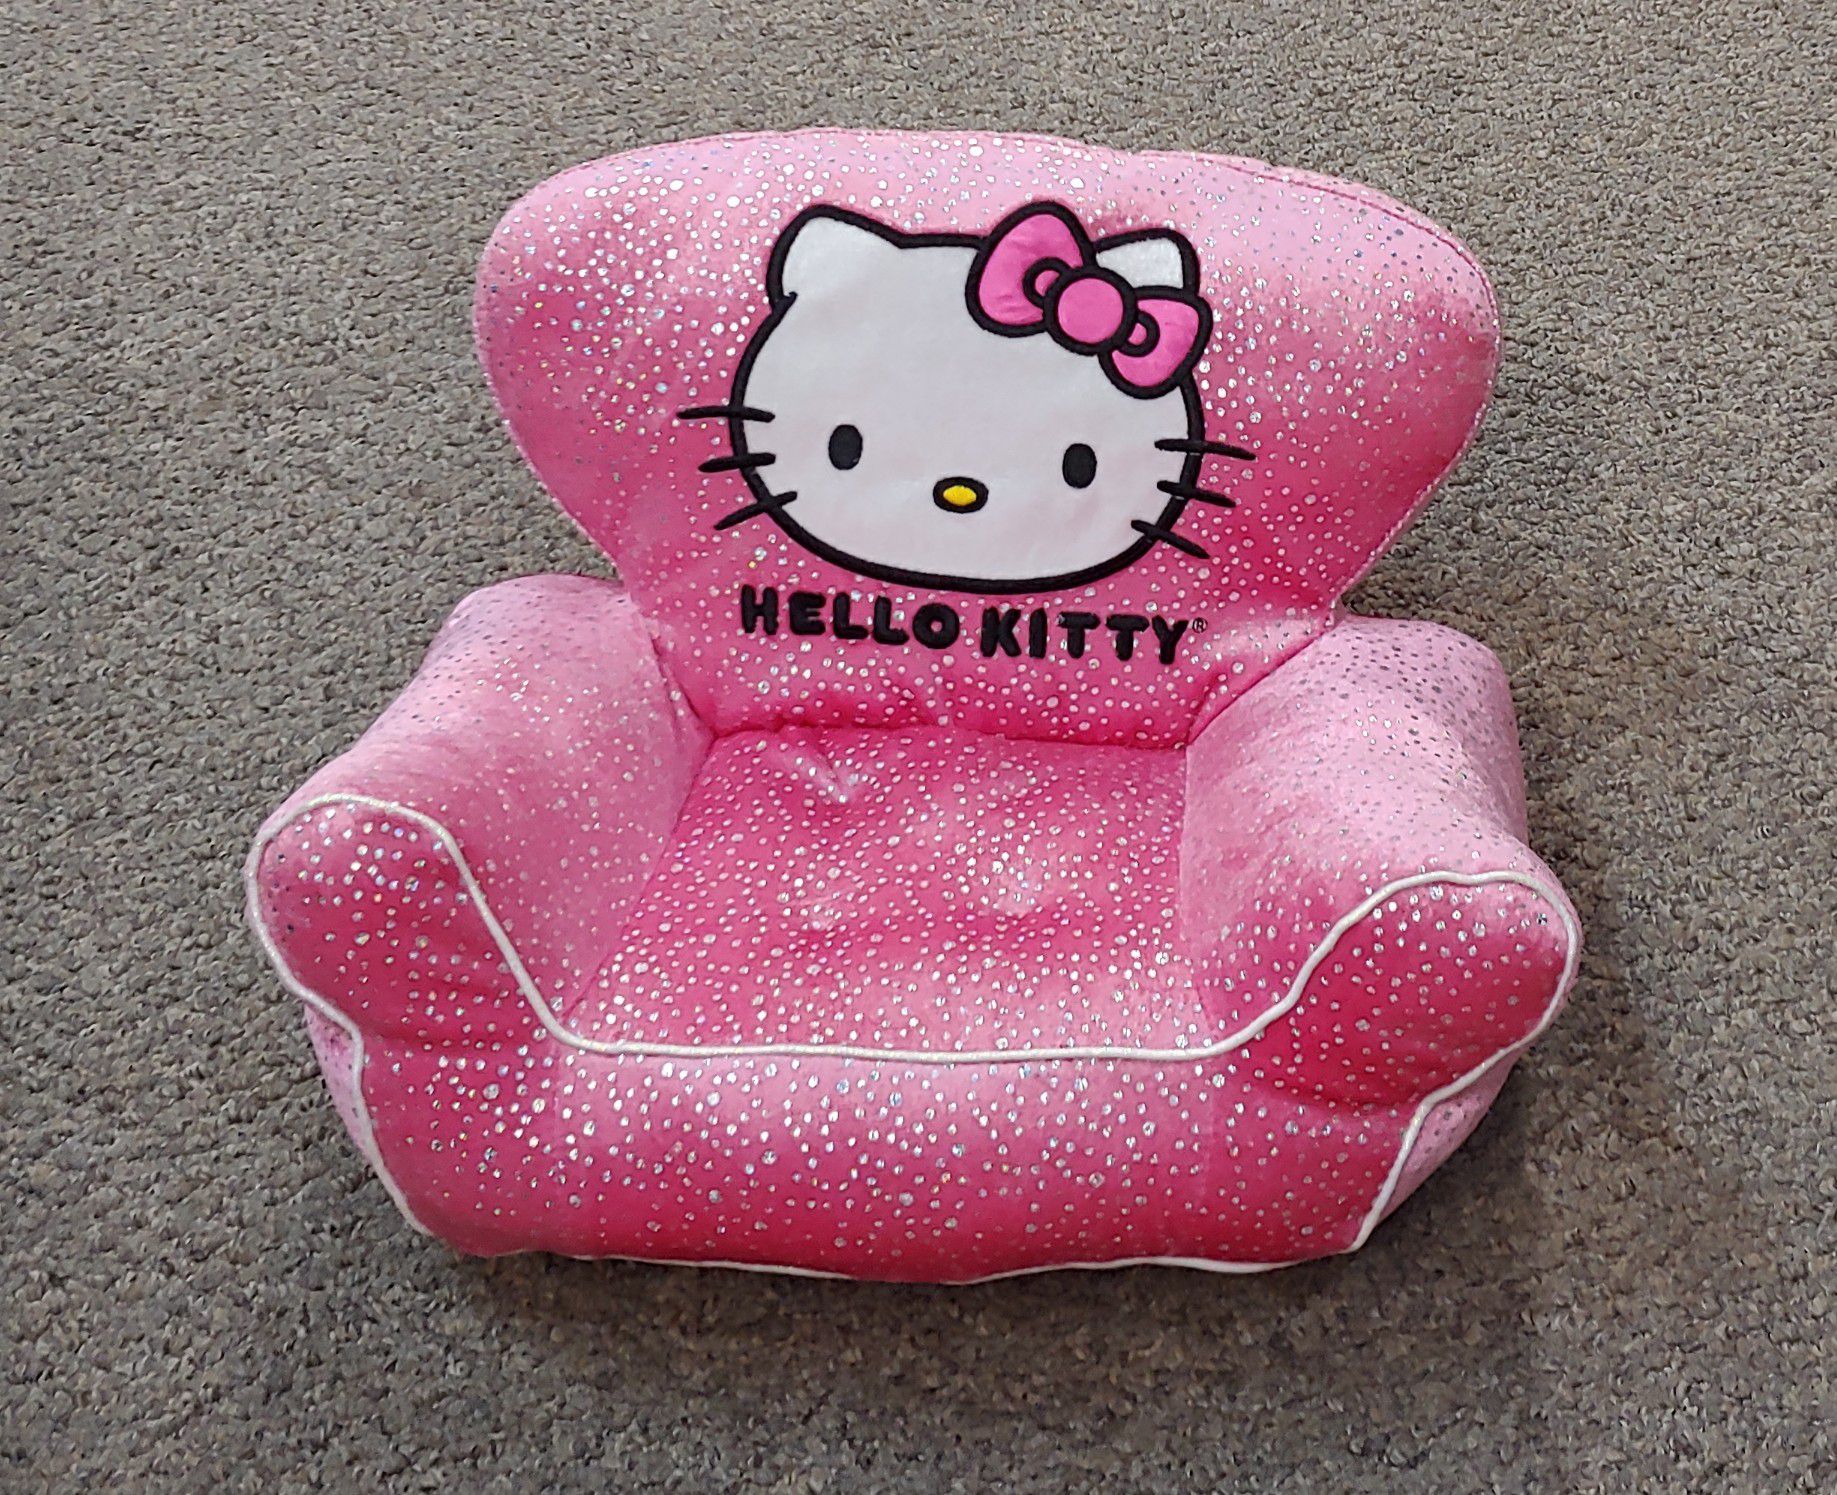 Kid's Build-A-Bear Hello Kitty Plush Chair